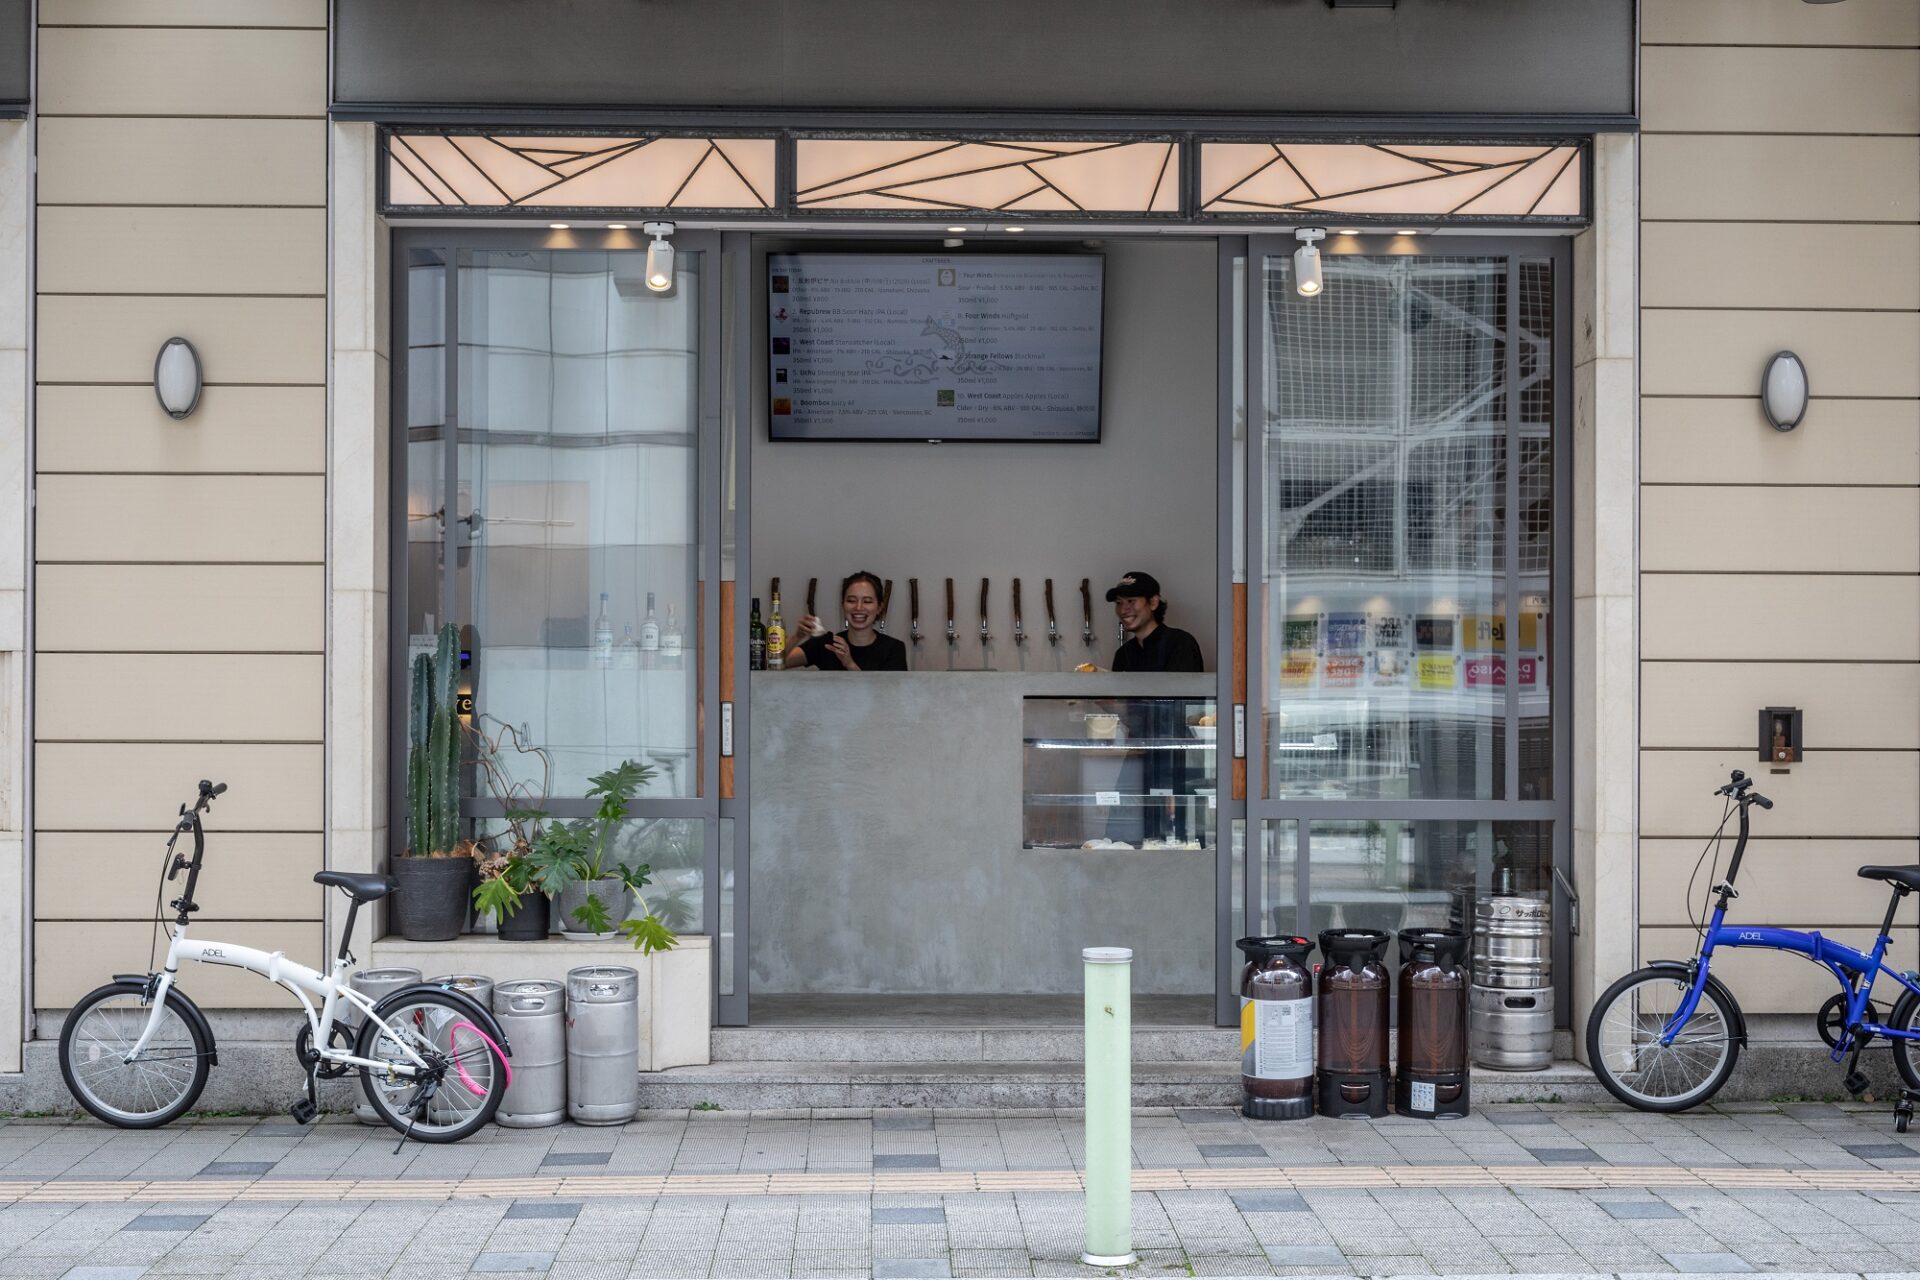 「静岡のビールと食材を知る入口になるように」と、入り江を意味する「cove」という名が付けられた。ドアが広く開放され、若い女性もひとりでふらっと入れる雰囲気。地元で造ったビールを地元の人が当たり前に飲む文化を作るのも目的のひとつだ。